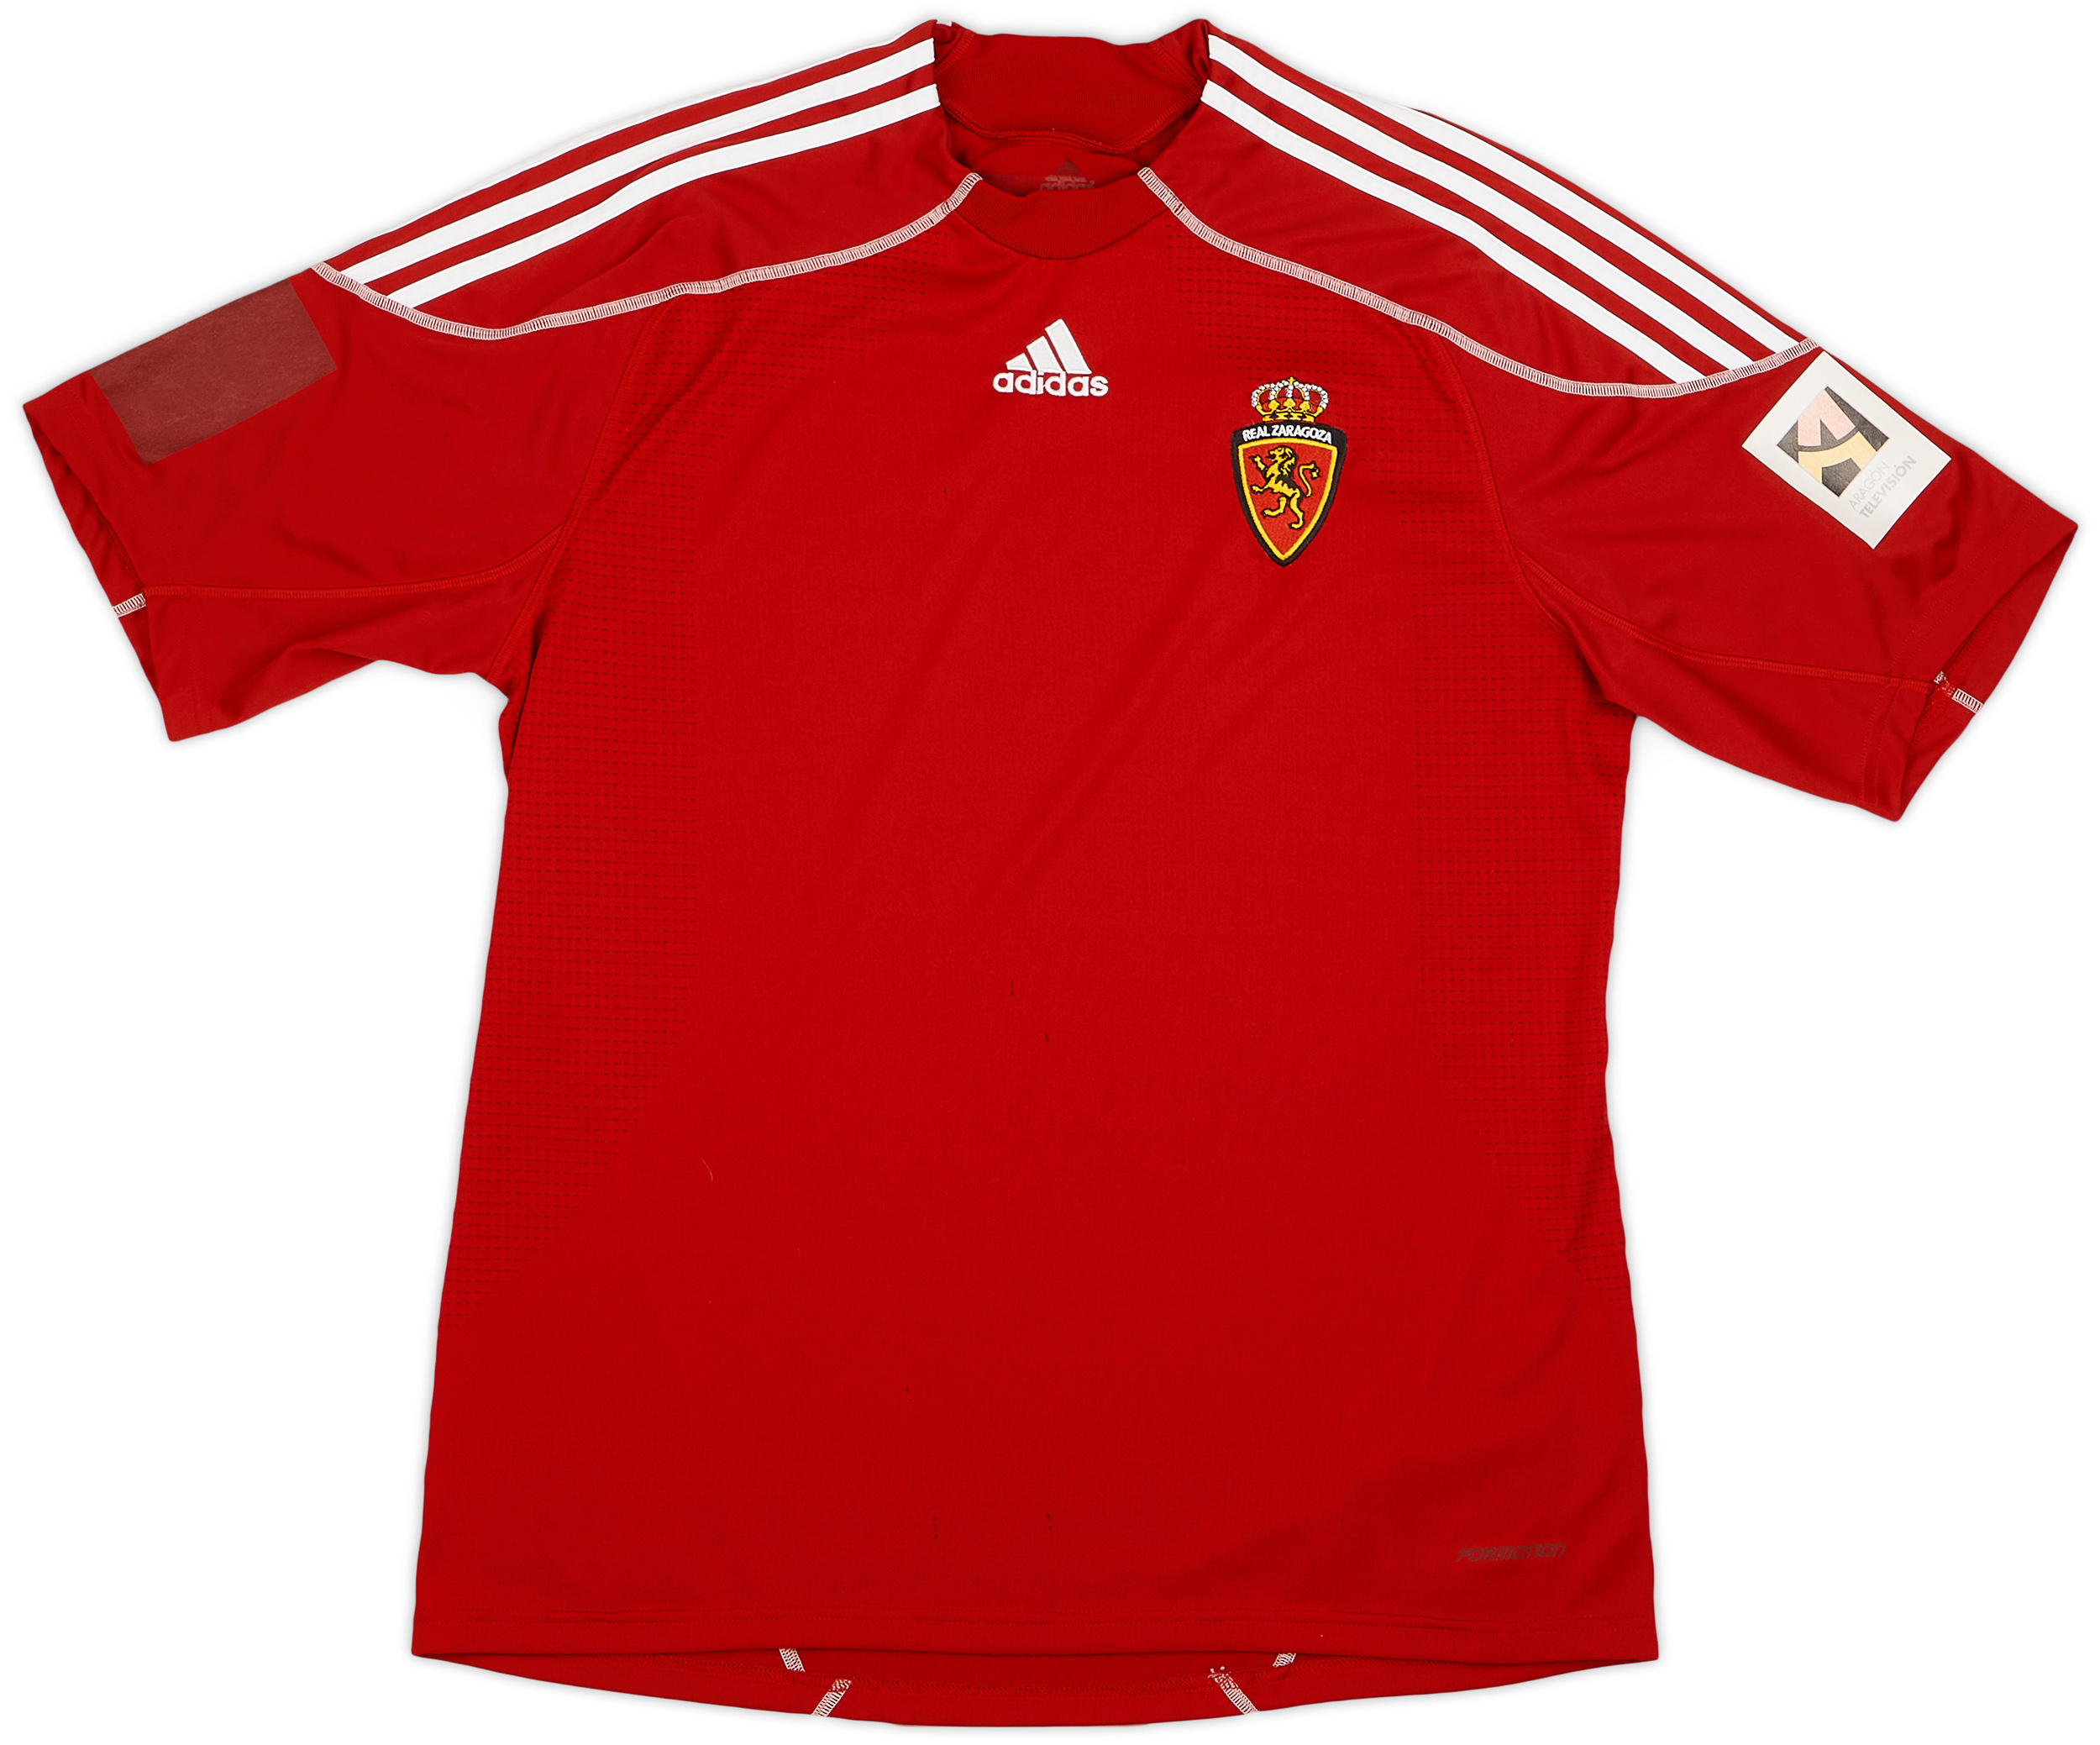 2009-11 Real Zaragoza Player Issue Third Shirt - 6/10 - ()